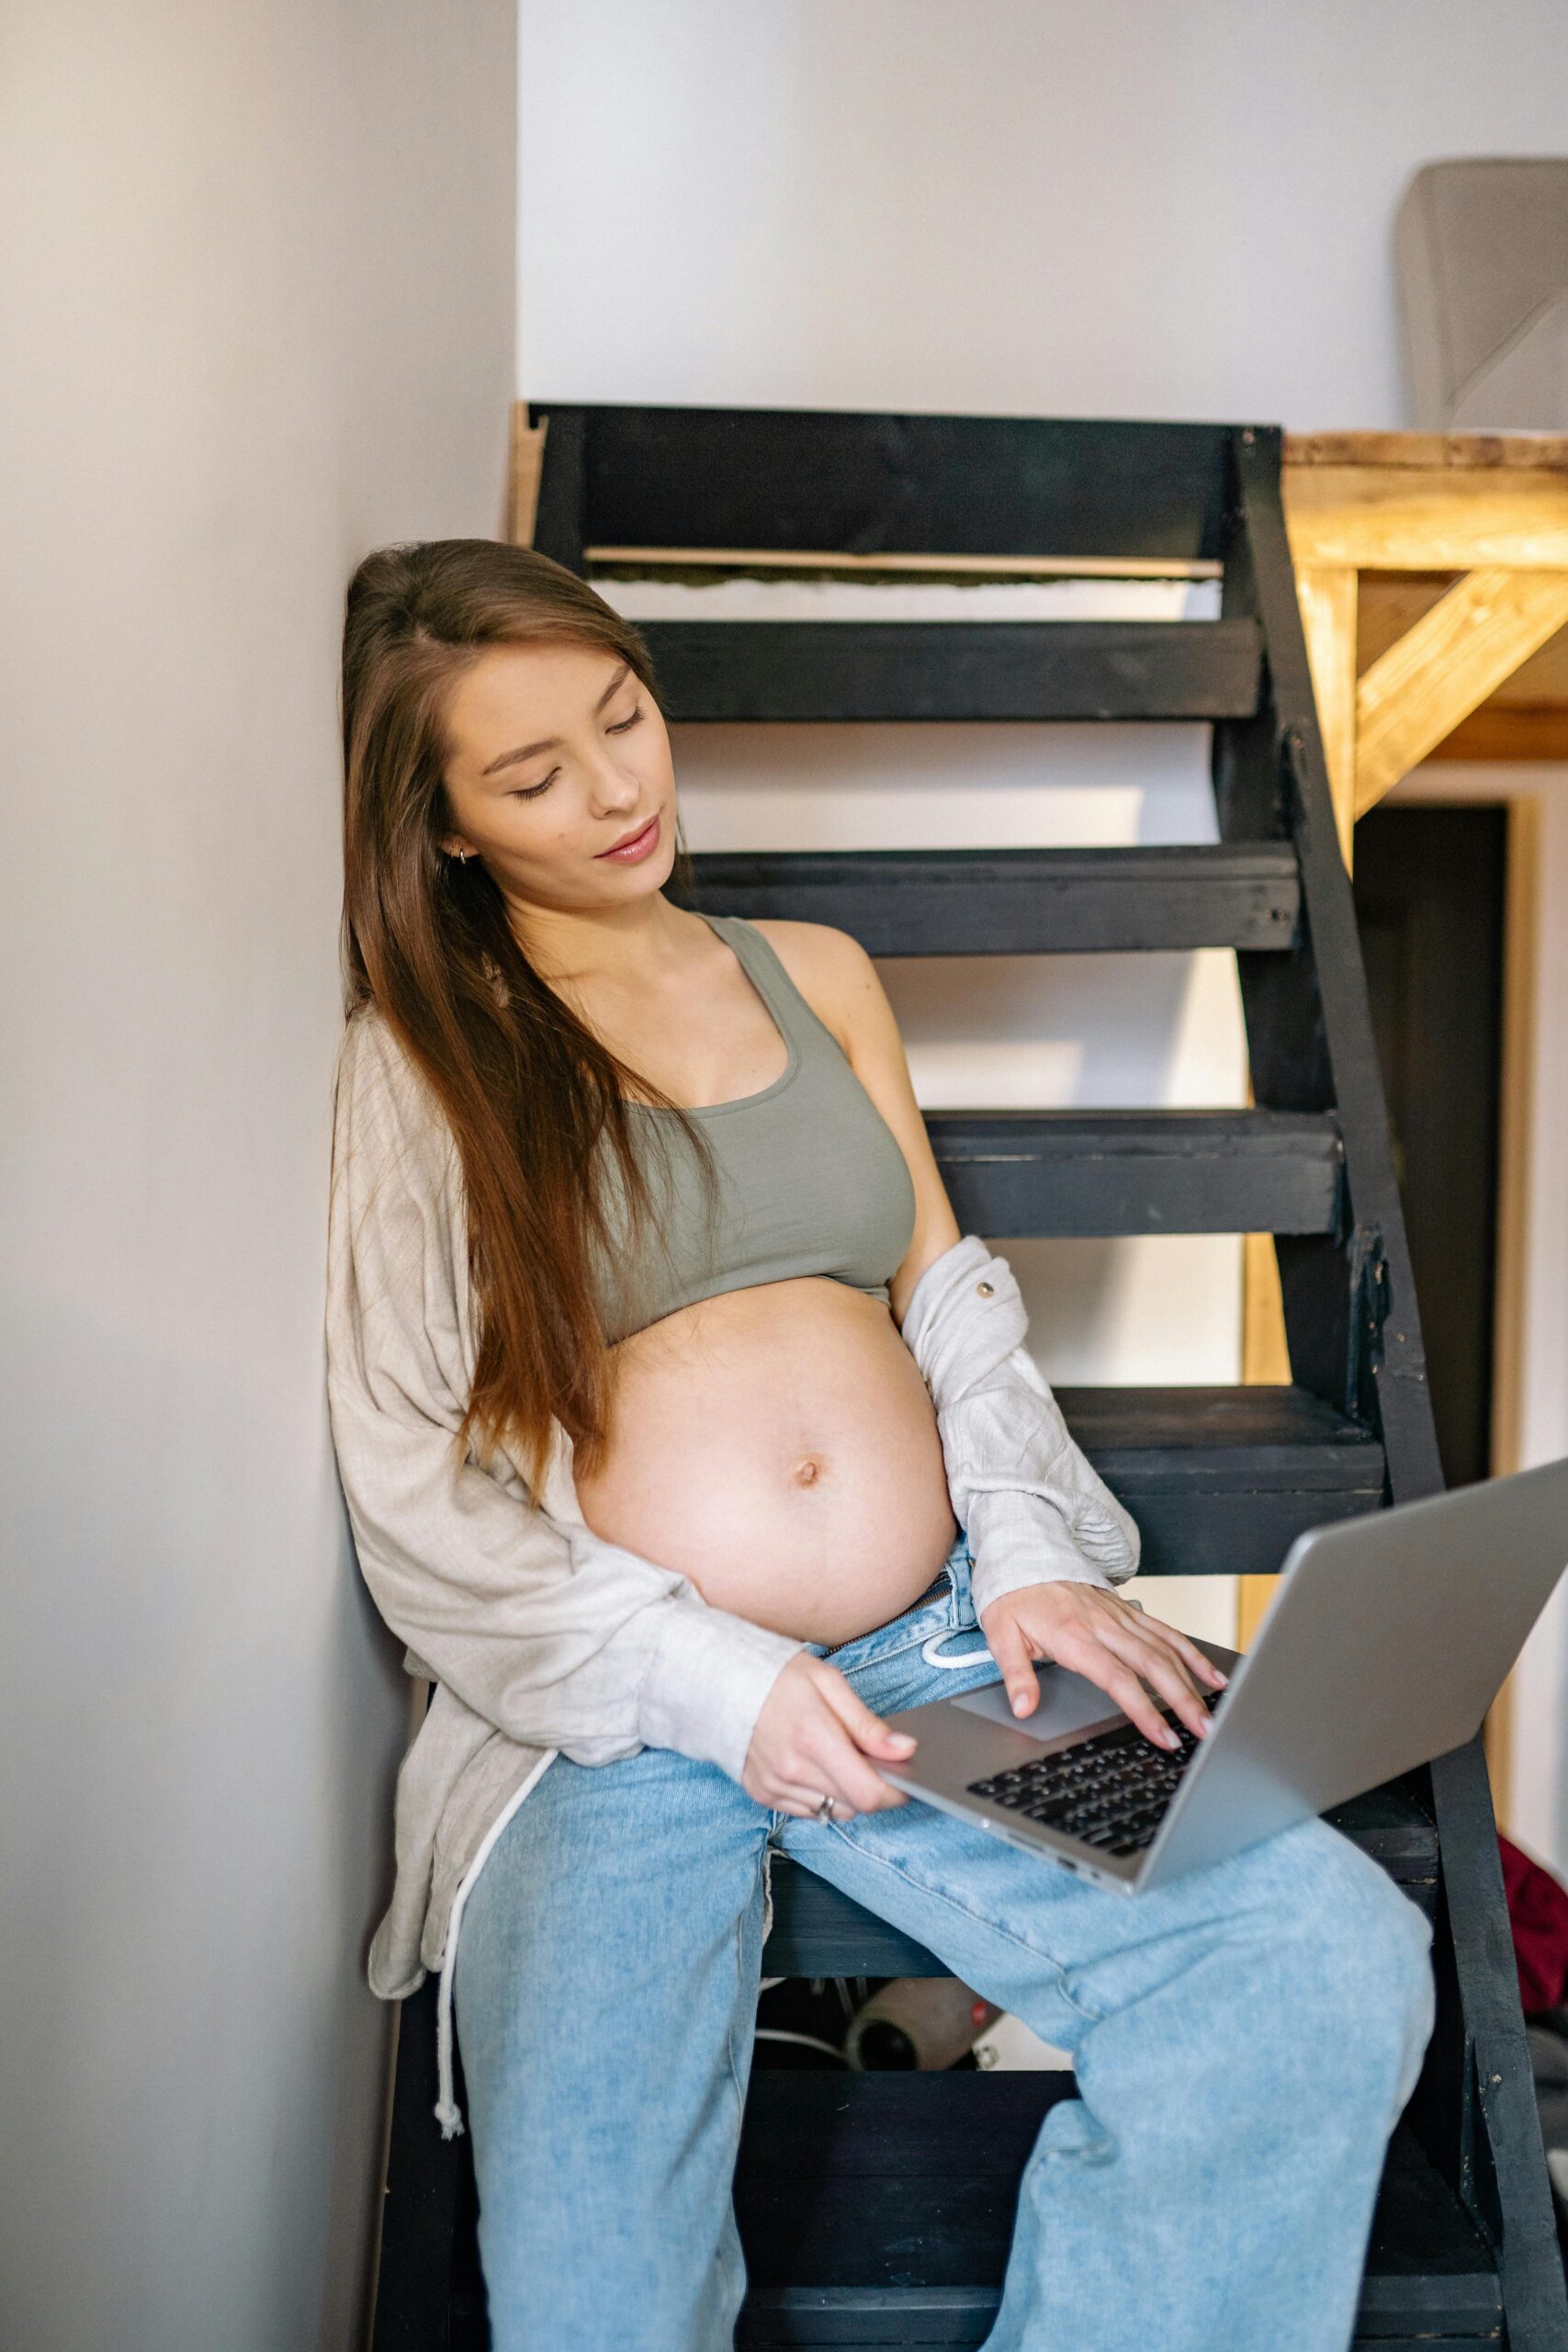 zwangerschapsdiscriminatie op de werkvloer